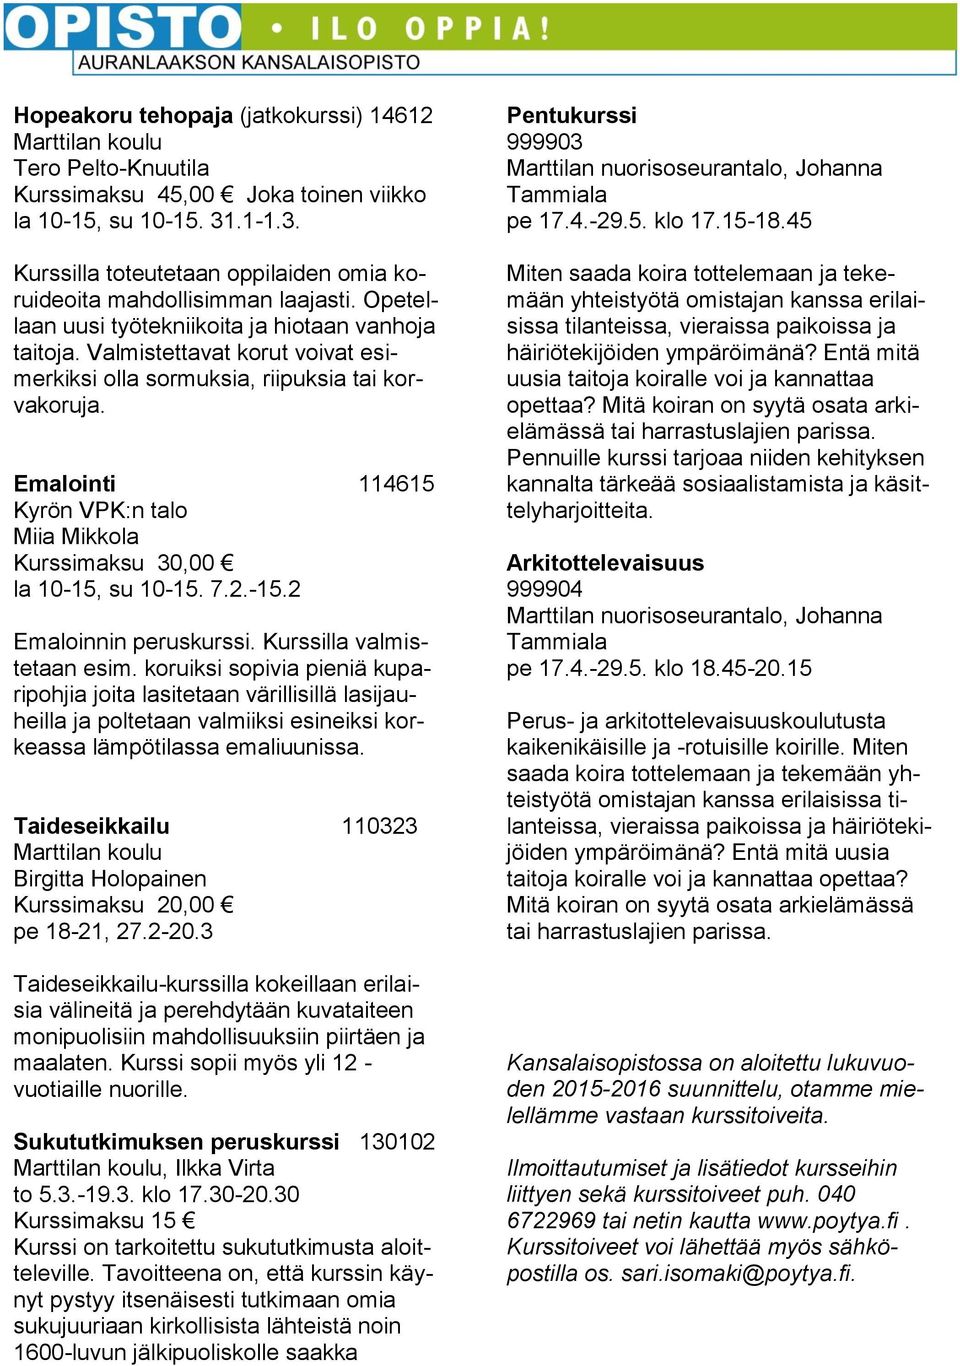 Valmistettavat korut voivat esimerkiksi olla sormuksia, riipuksia tai korvakoruja. Emalointi 114615 Kyrön VPK:n talo Miia Mikkola Kurssimaksu 30,00 la 10-15, su 10-15. 7.2.-15.2 Emaloinnin peruskurssi.